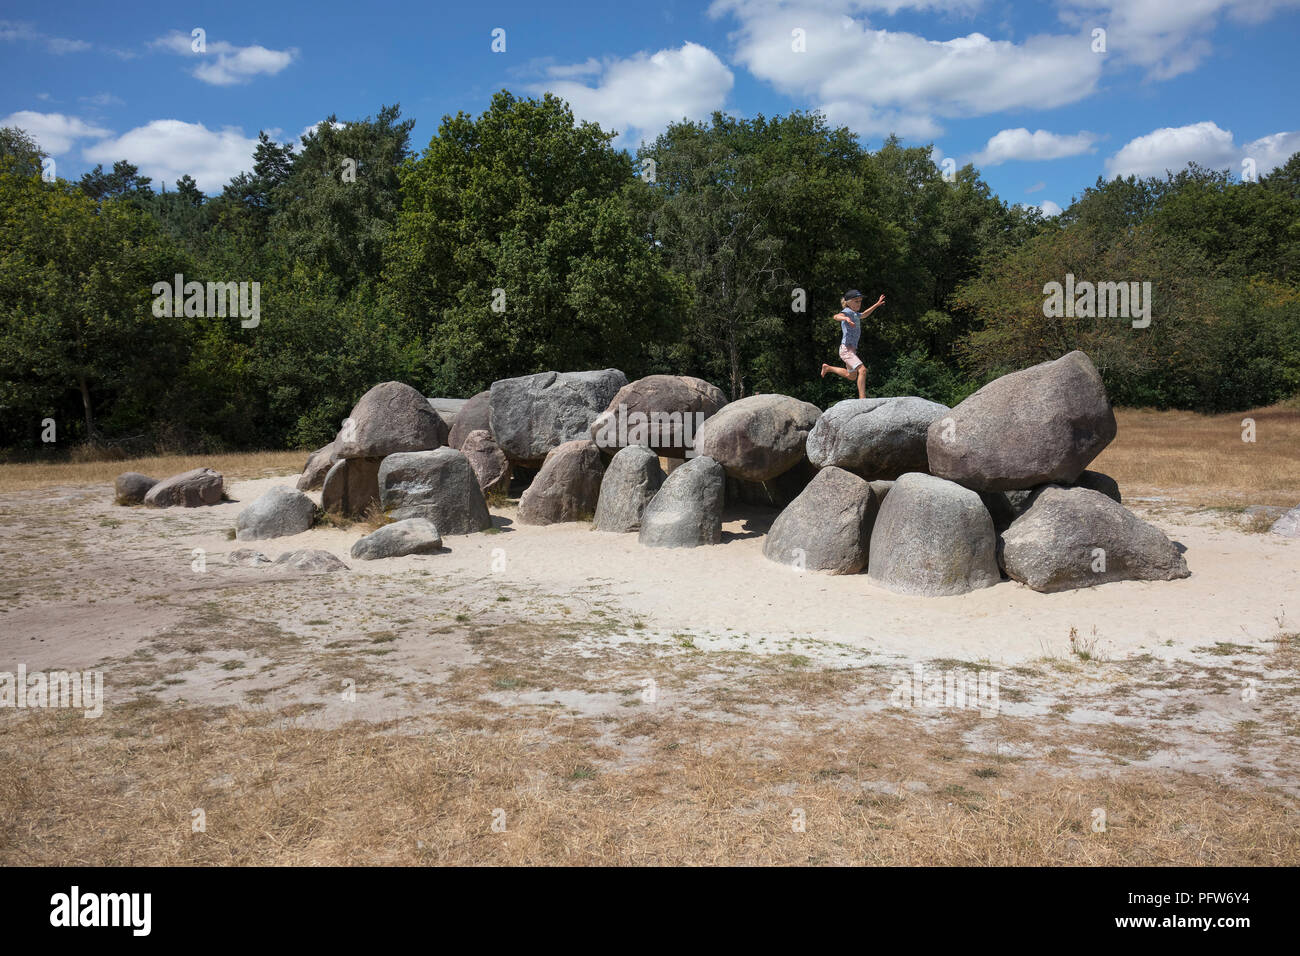 Havelte, Drenthe, Paesi Bassi - 14 Luglio 2018: bambino saltando sulle pietre di una vecchia tomba di pietra come un grande dolmen in Drenthe Olanda, chiamato in olandese Foto Stock